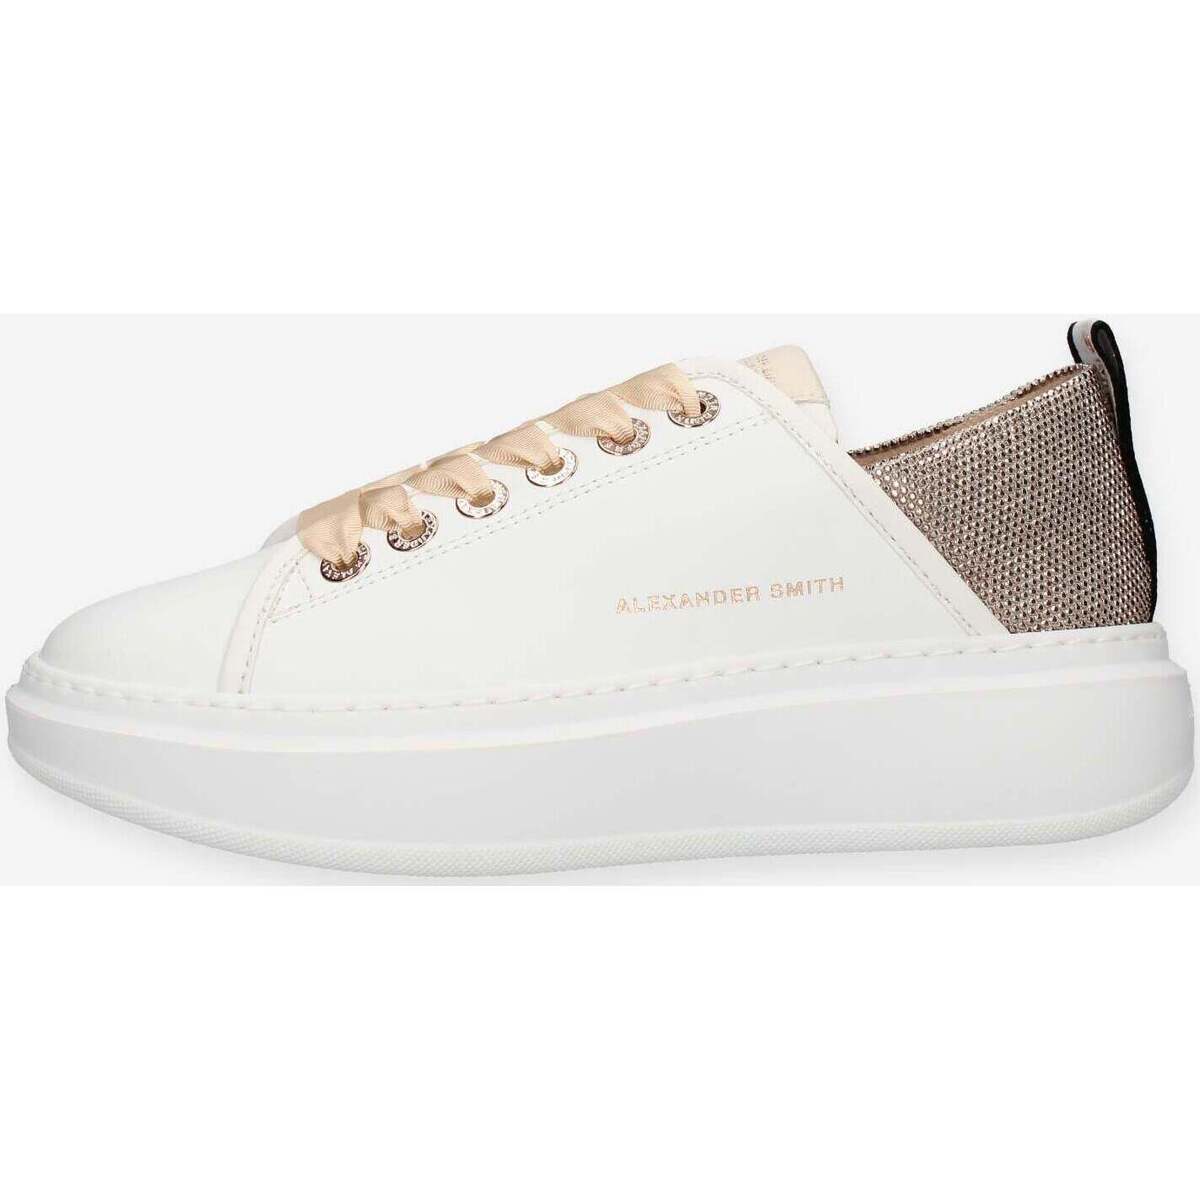 Schuhe Damen Sneaker High Alexander Smith ASAZWYW-0495-WBE Weiss